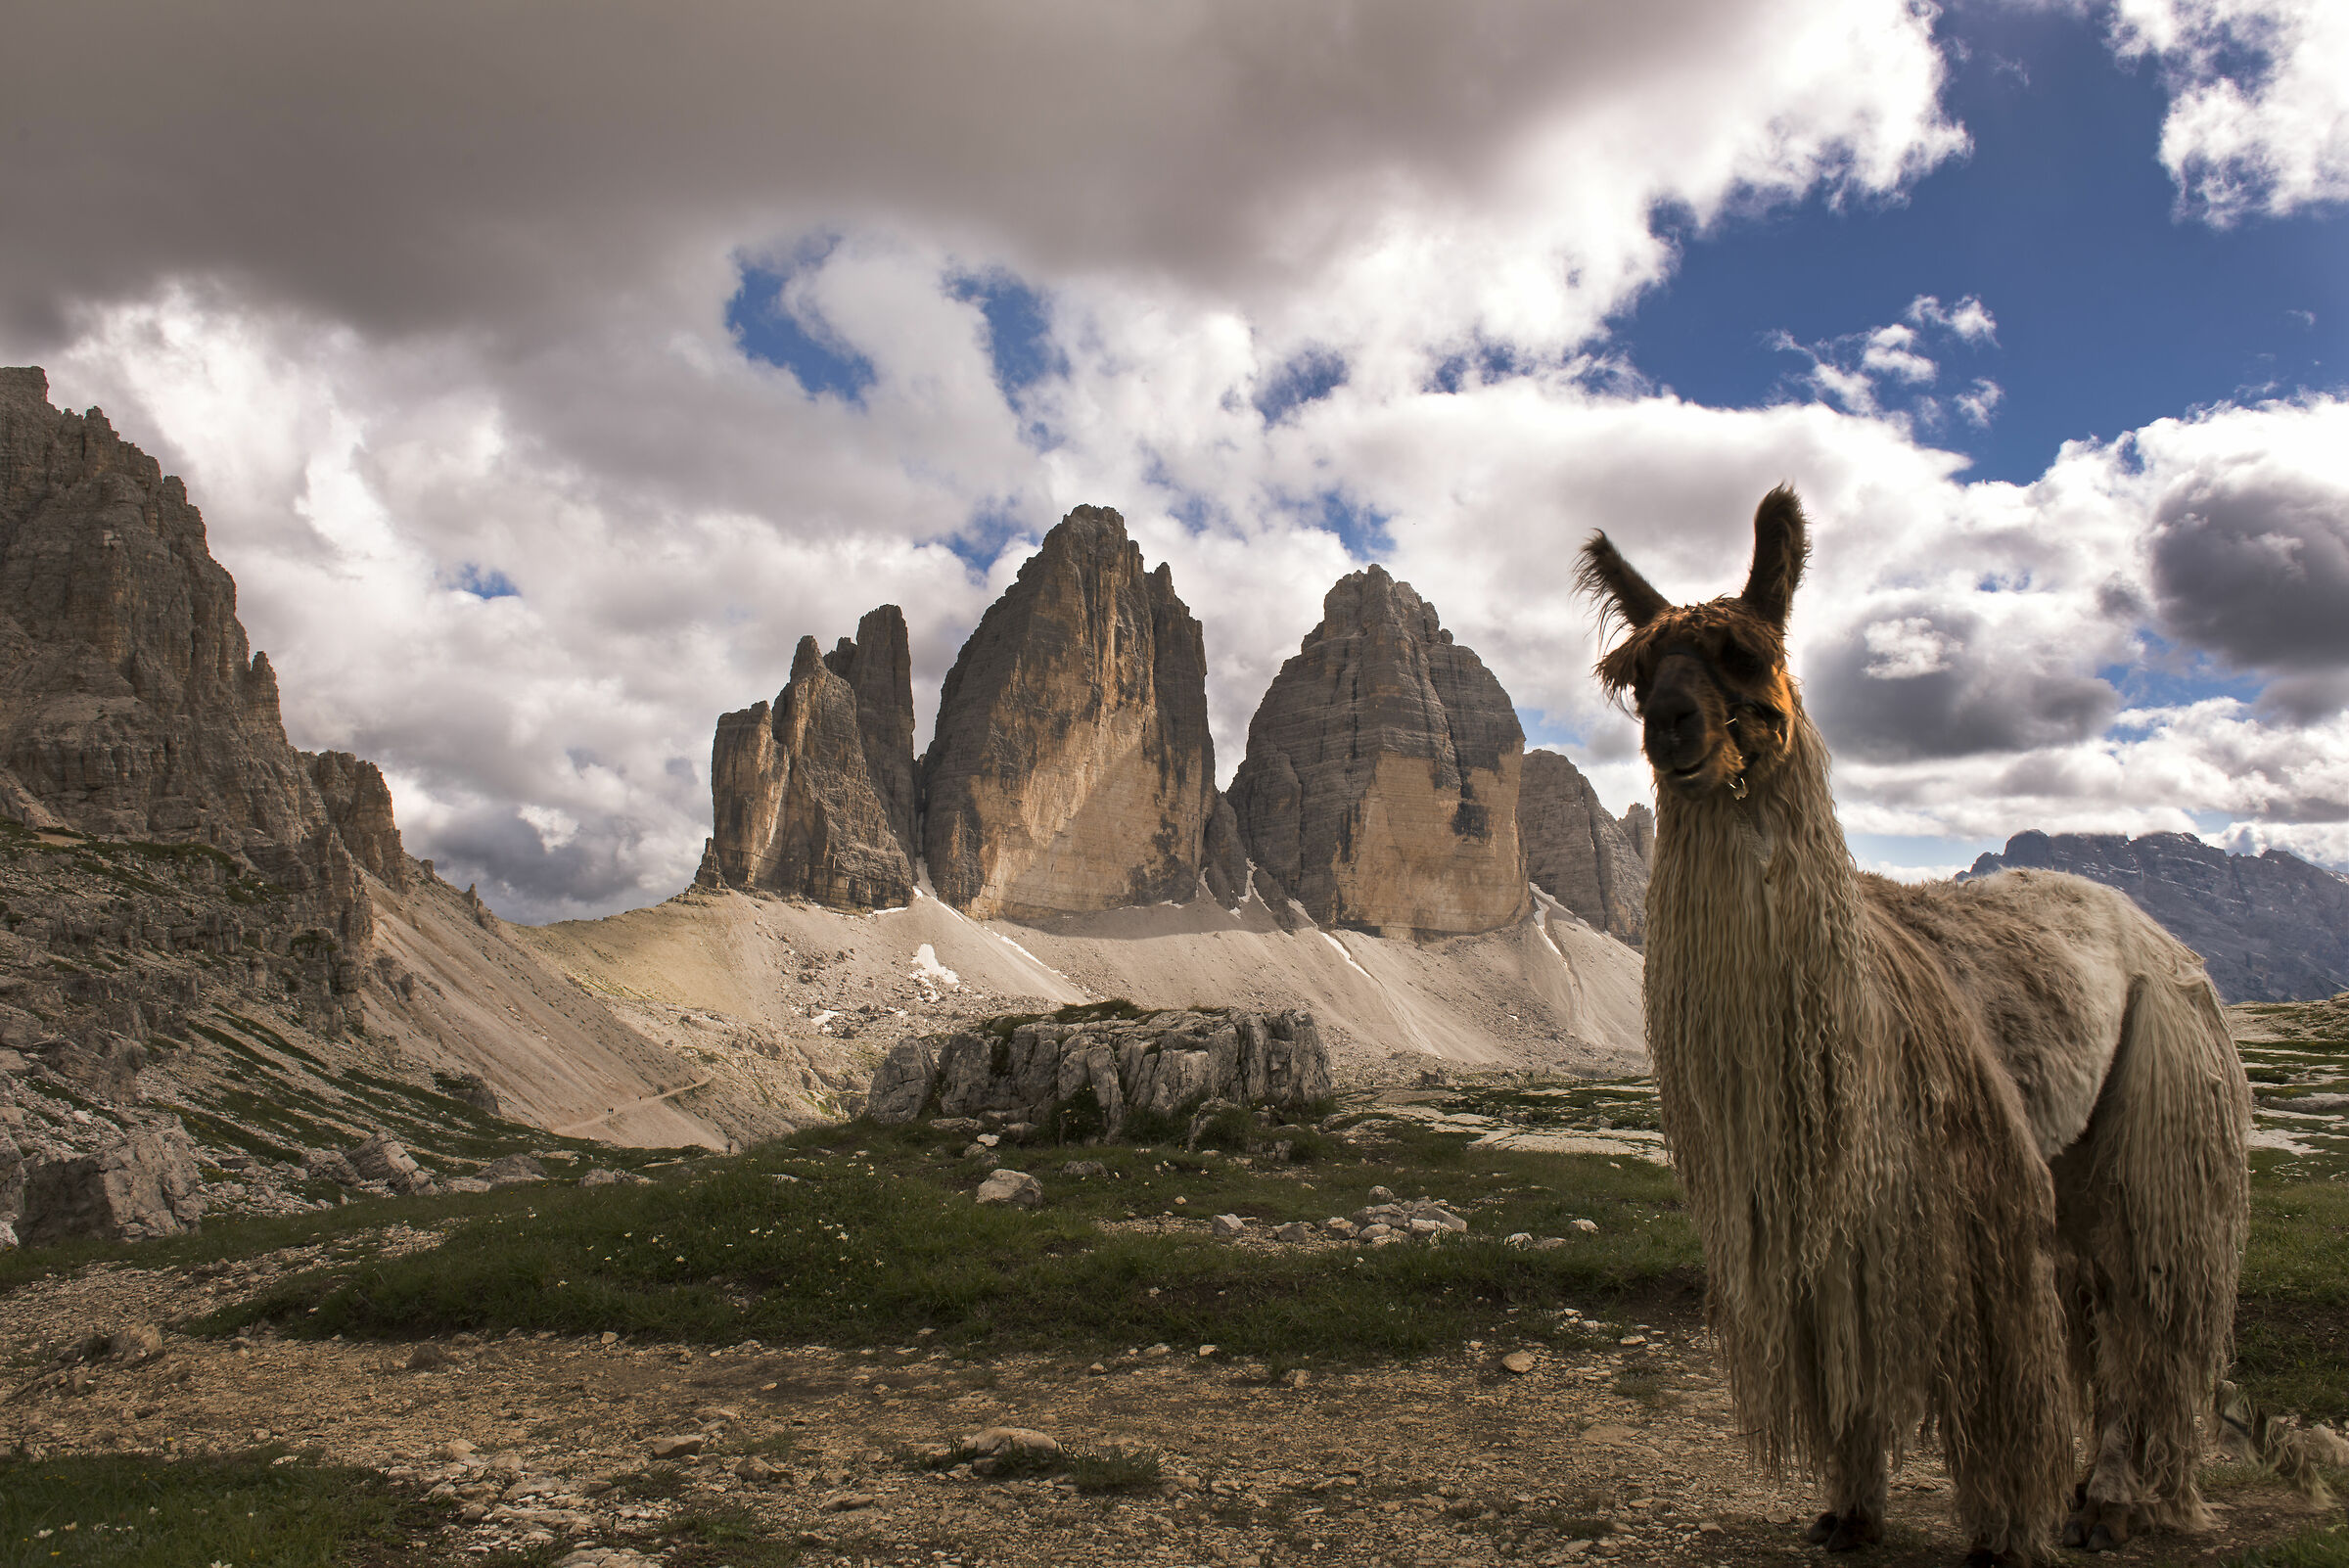 alpaca of the three peaks...